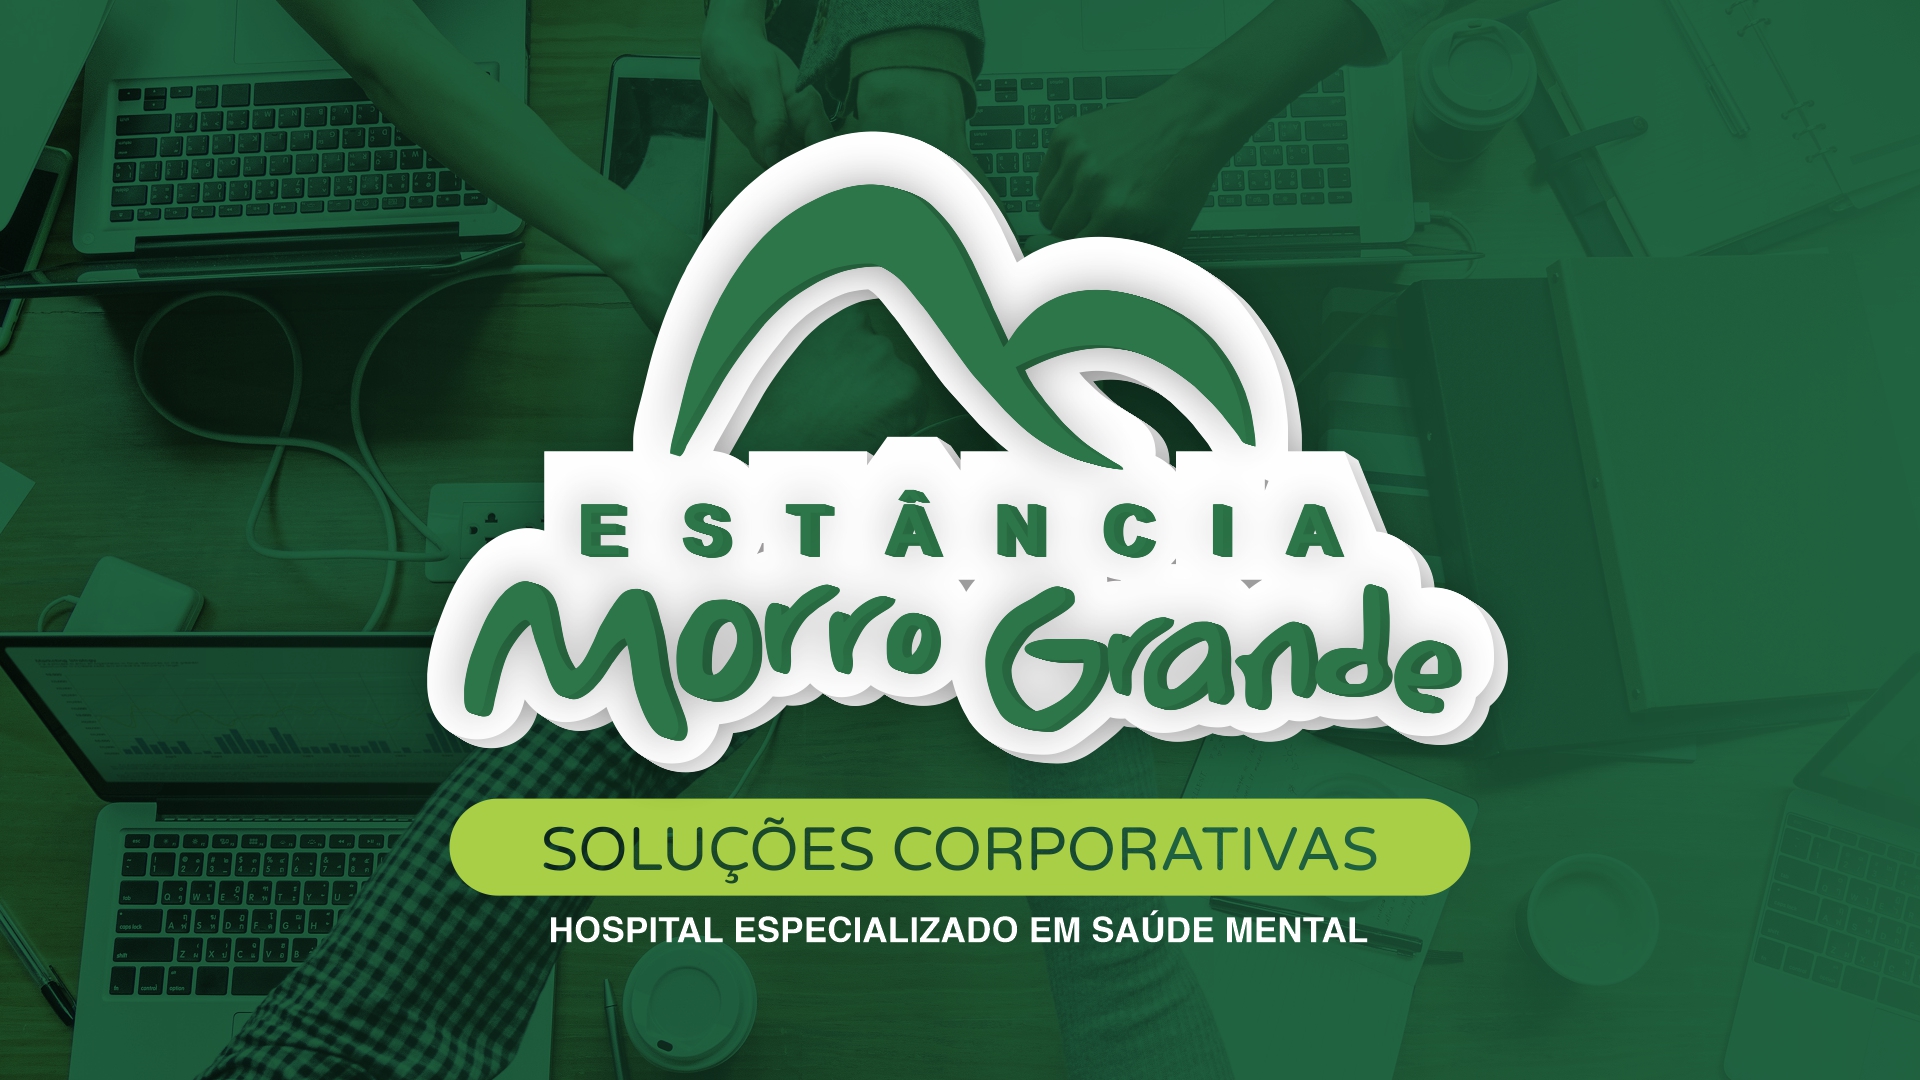 Estância Morro Grande Soluções Corporativas - Hospital Especializado em Saúde Mental